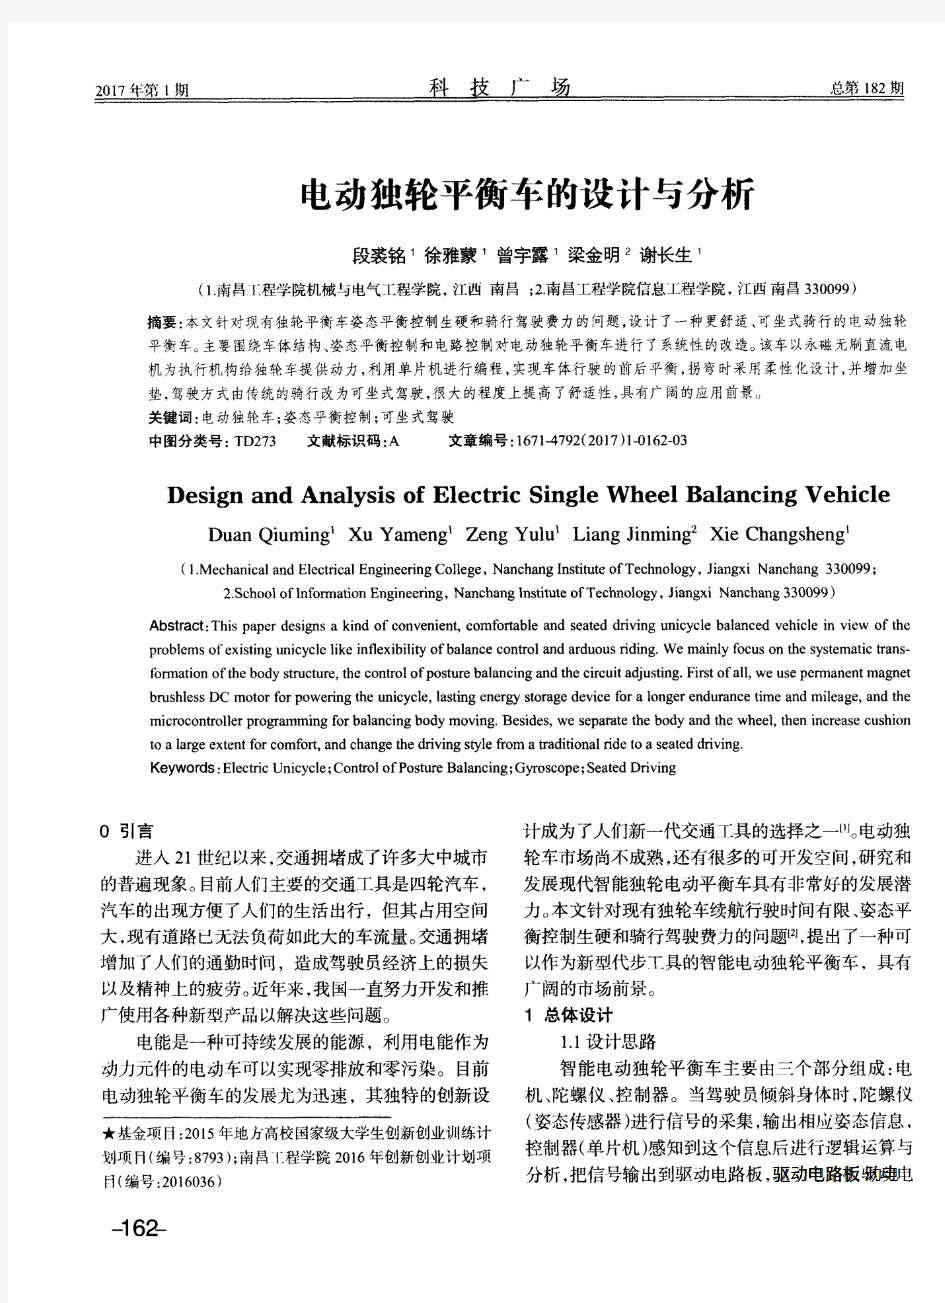 电动独轮平衡车的设计与分析